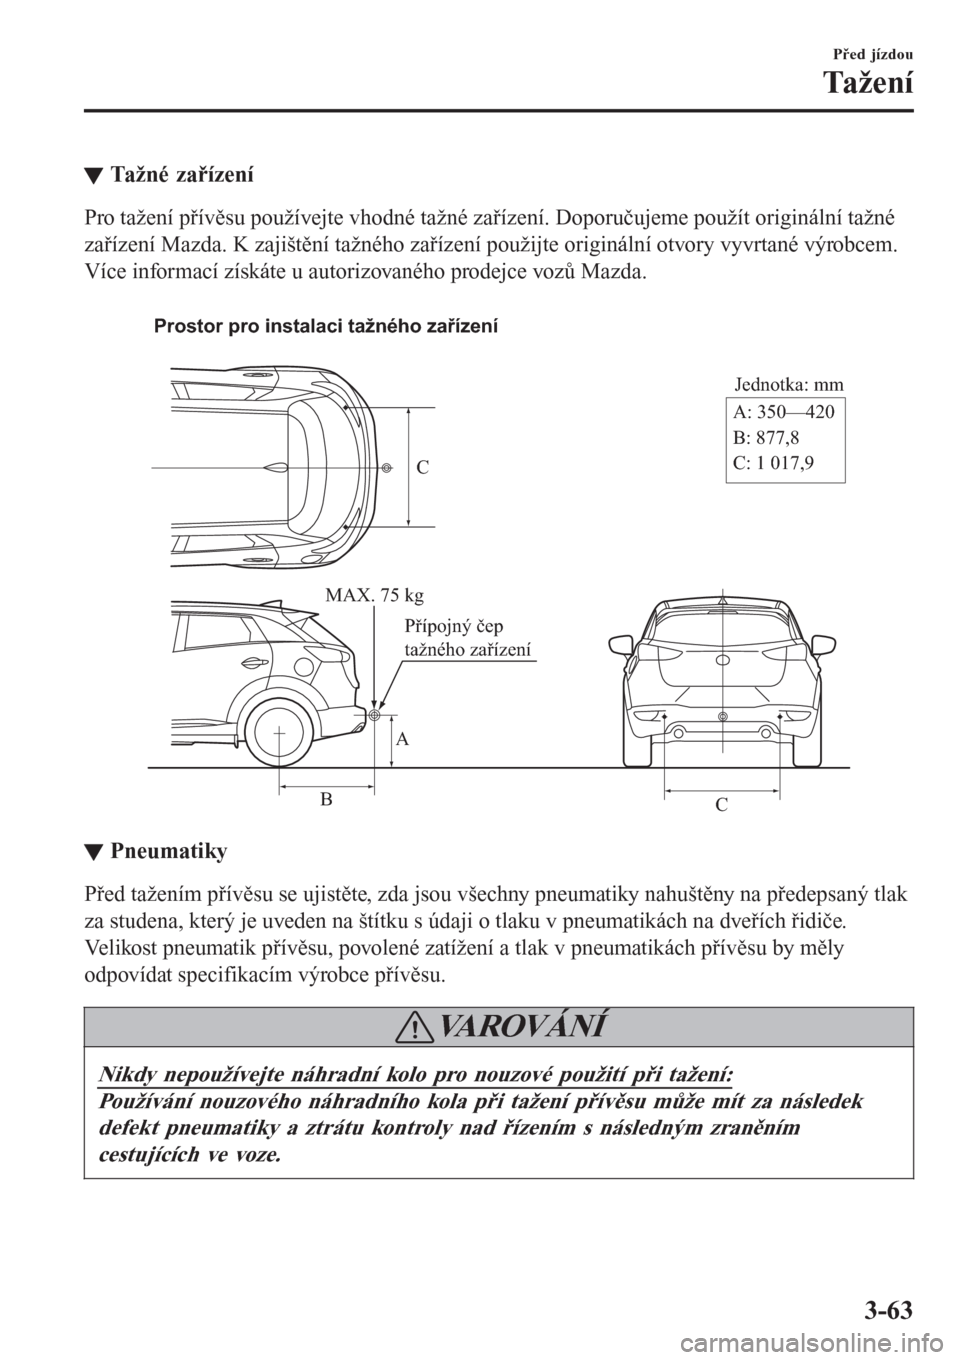 MAZDA MODEL CX-3 2016  Návod k obsluze (in Czech) tTažné zařízení
Pro tažení přívěsu používejte vhodné tažné zařízení. Doporučujeme použít originální tažné
zařízení Mazda. K zajištění tažného zařízení použijte ori